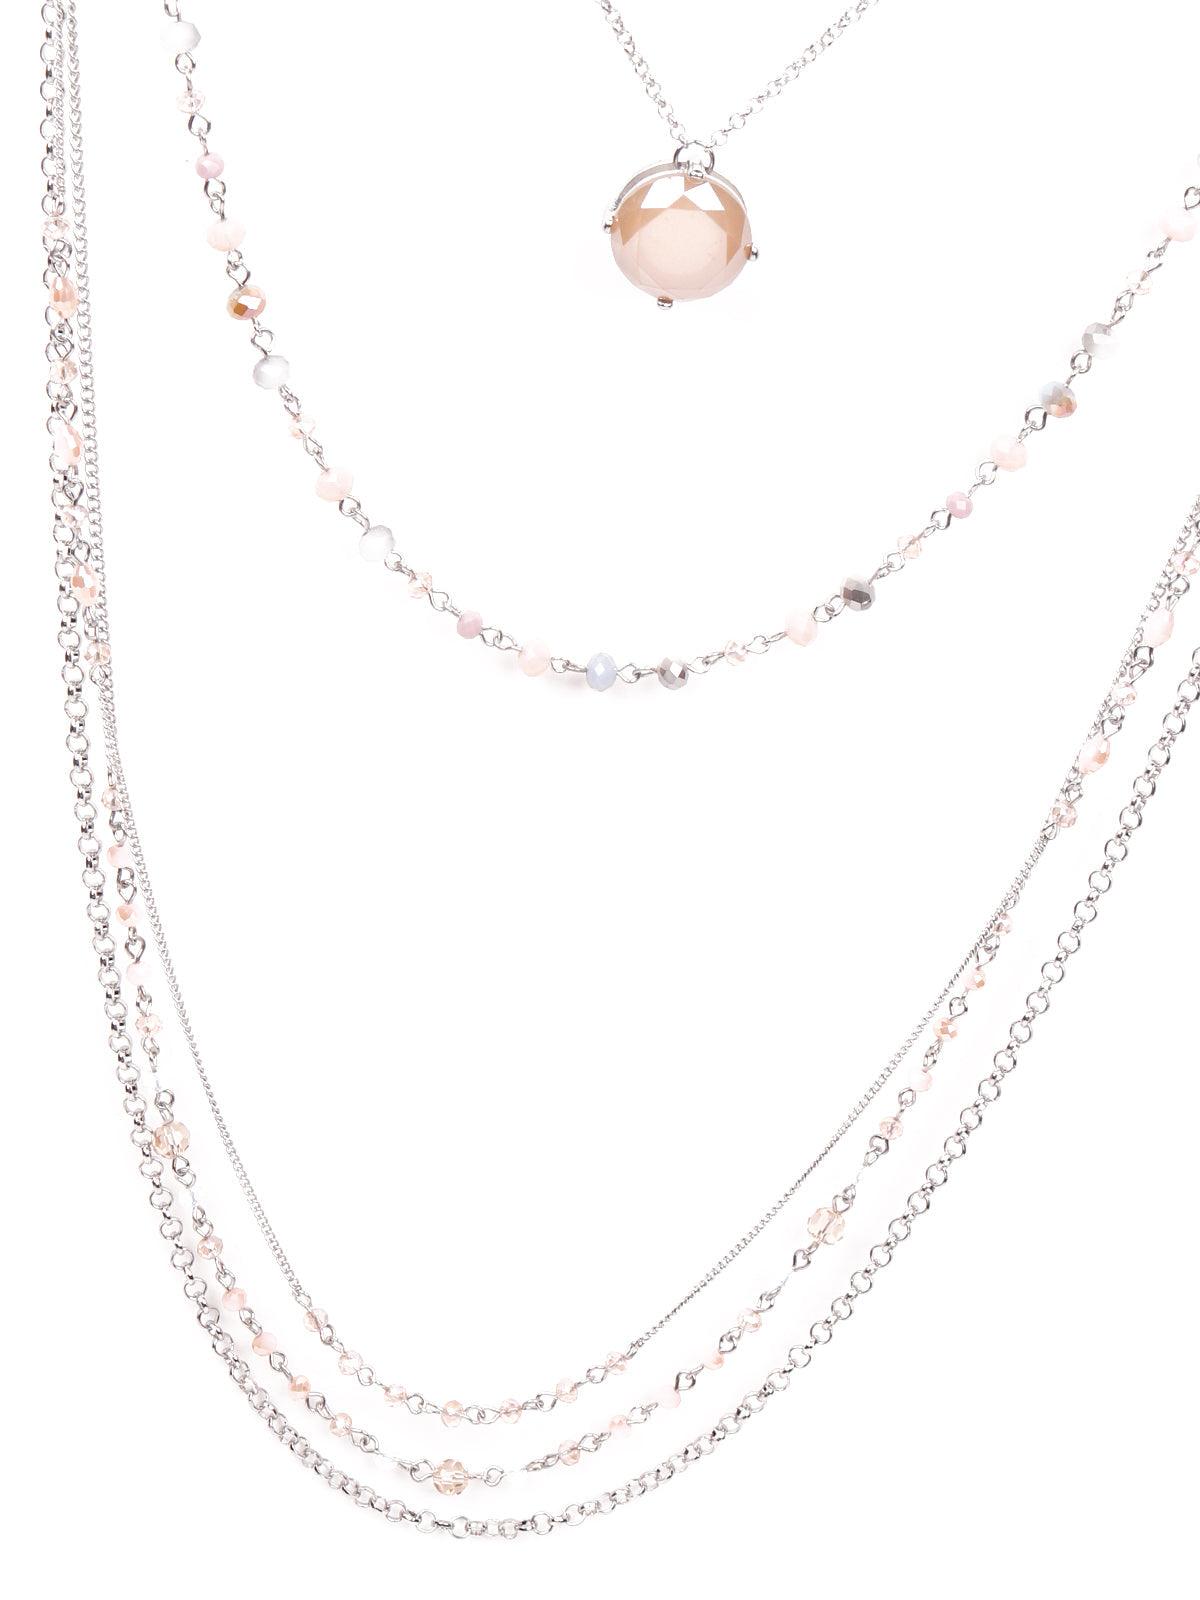 Elegant multilayered soft pink necklace - Odette